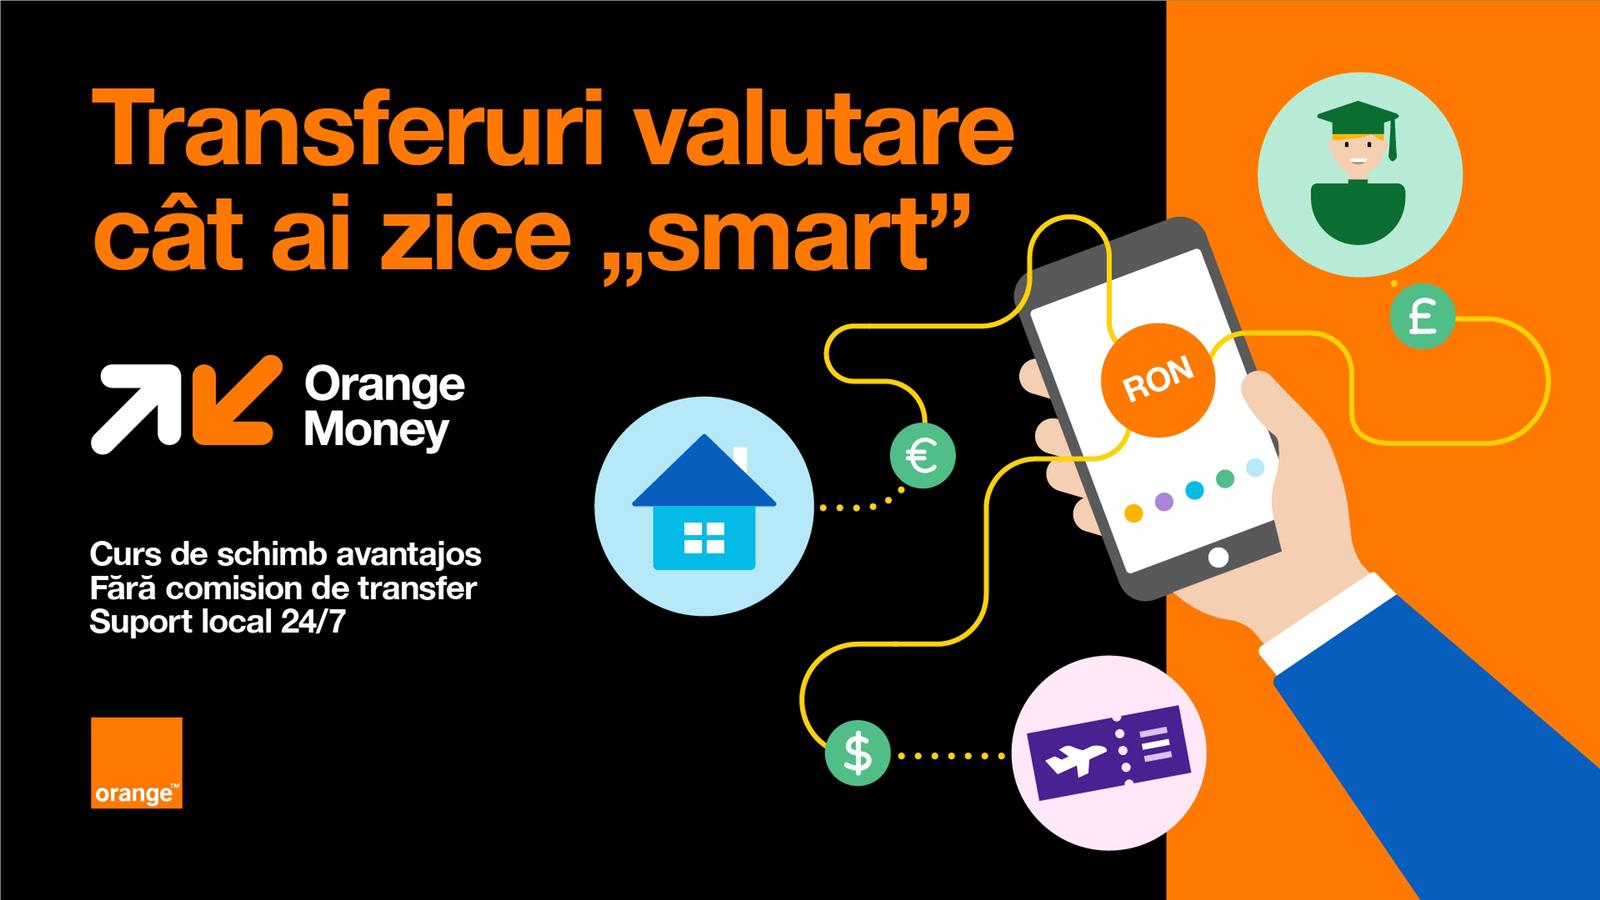 Transferuri valutare avantajoase cu aplicația mobilă Orange Money